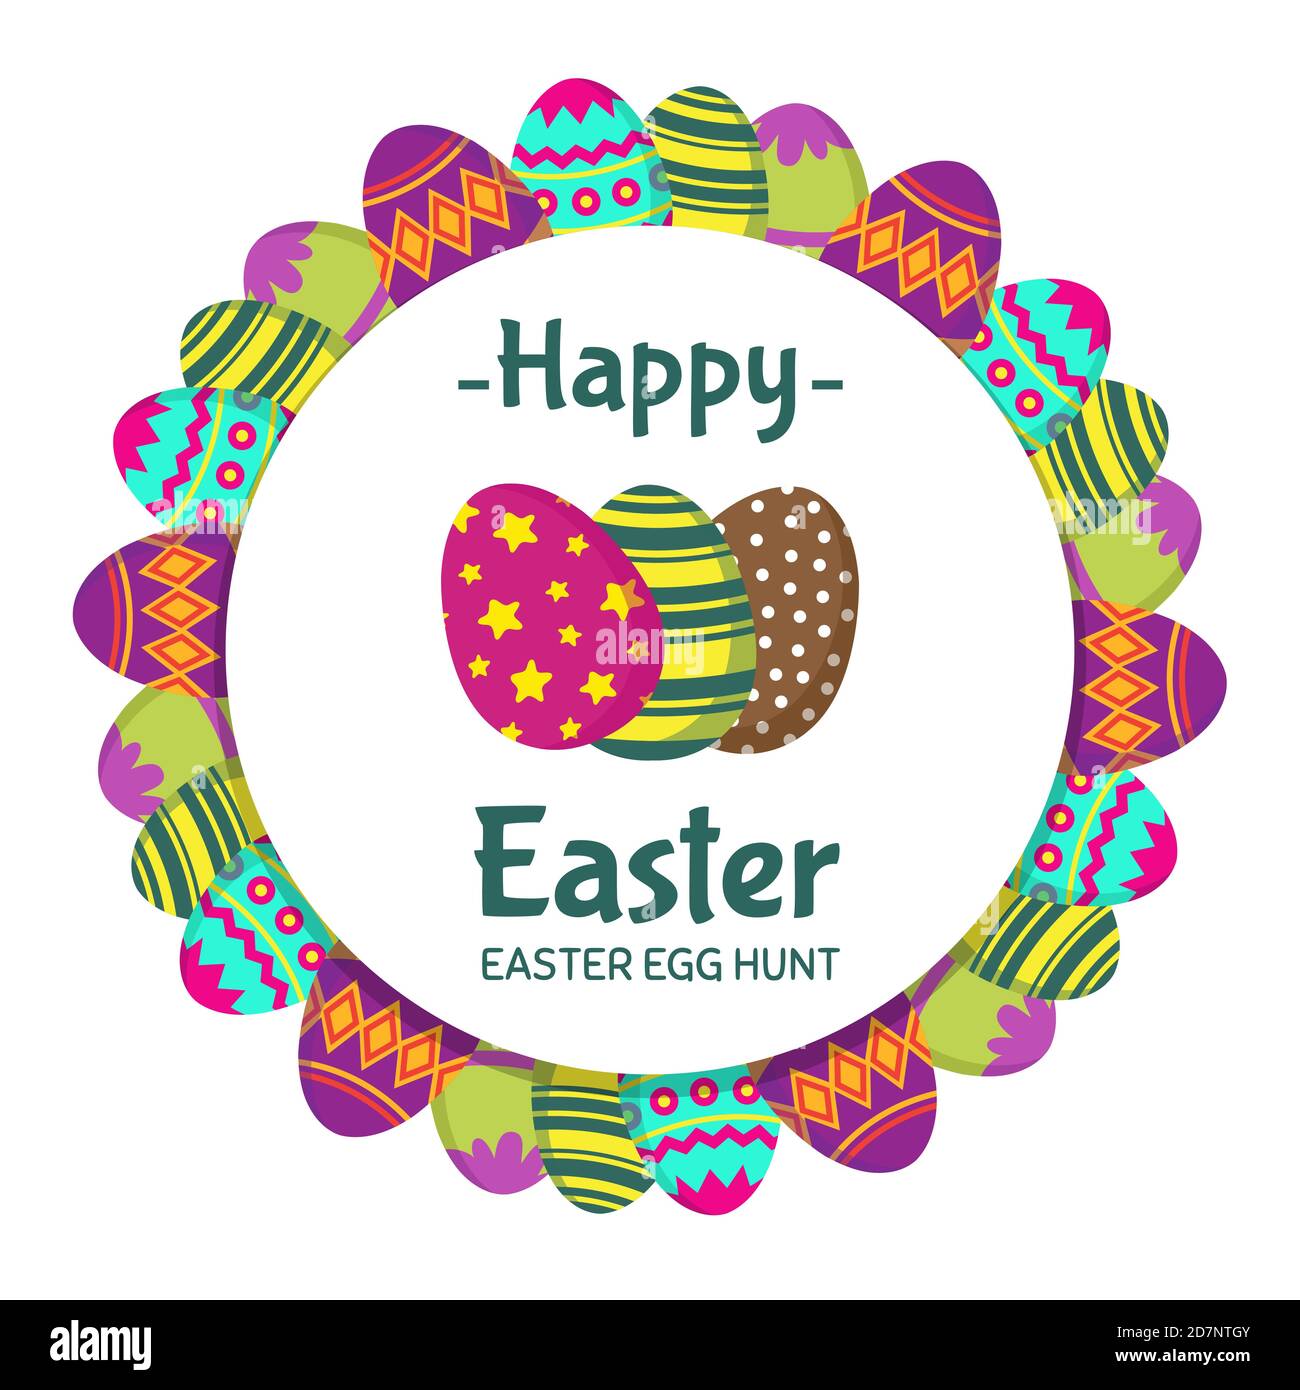 Frohe Ostern runde Banner mit Färbung Eier Vektor-Design. Feiertag osterbanner, Gruß und Einladung zur Eiersuche Illustration Stock Vektor